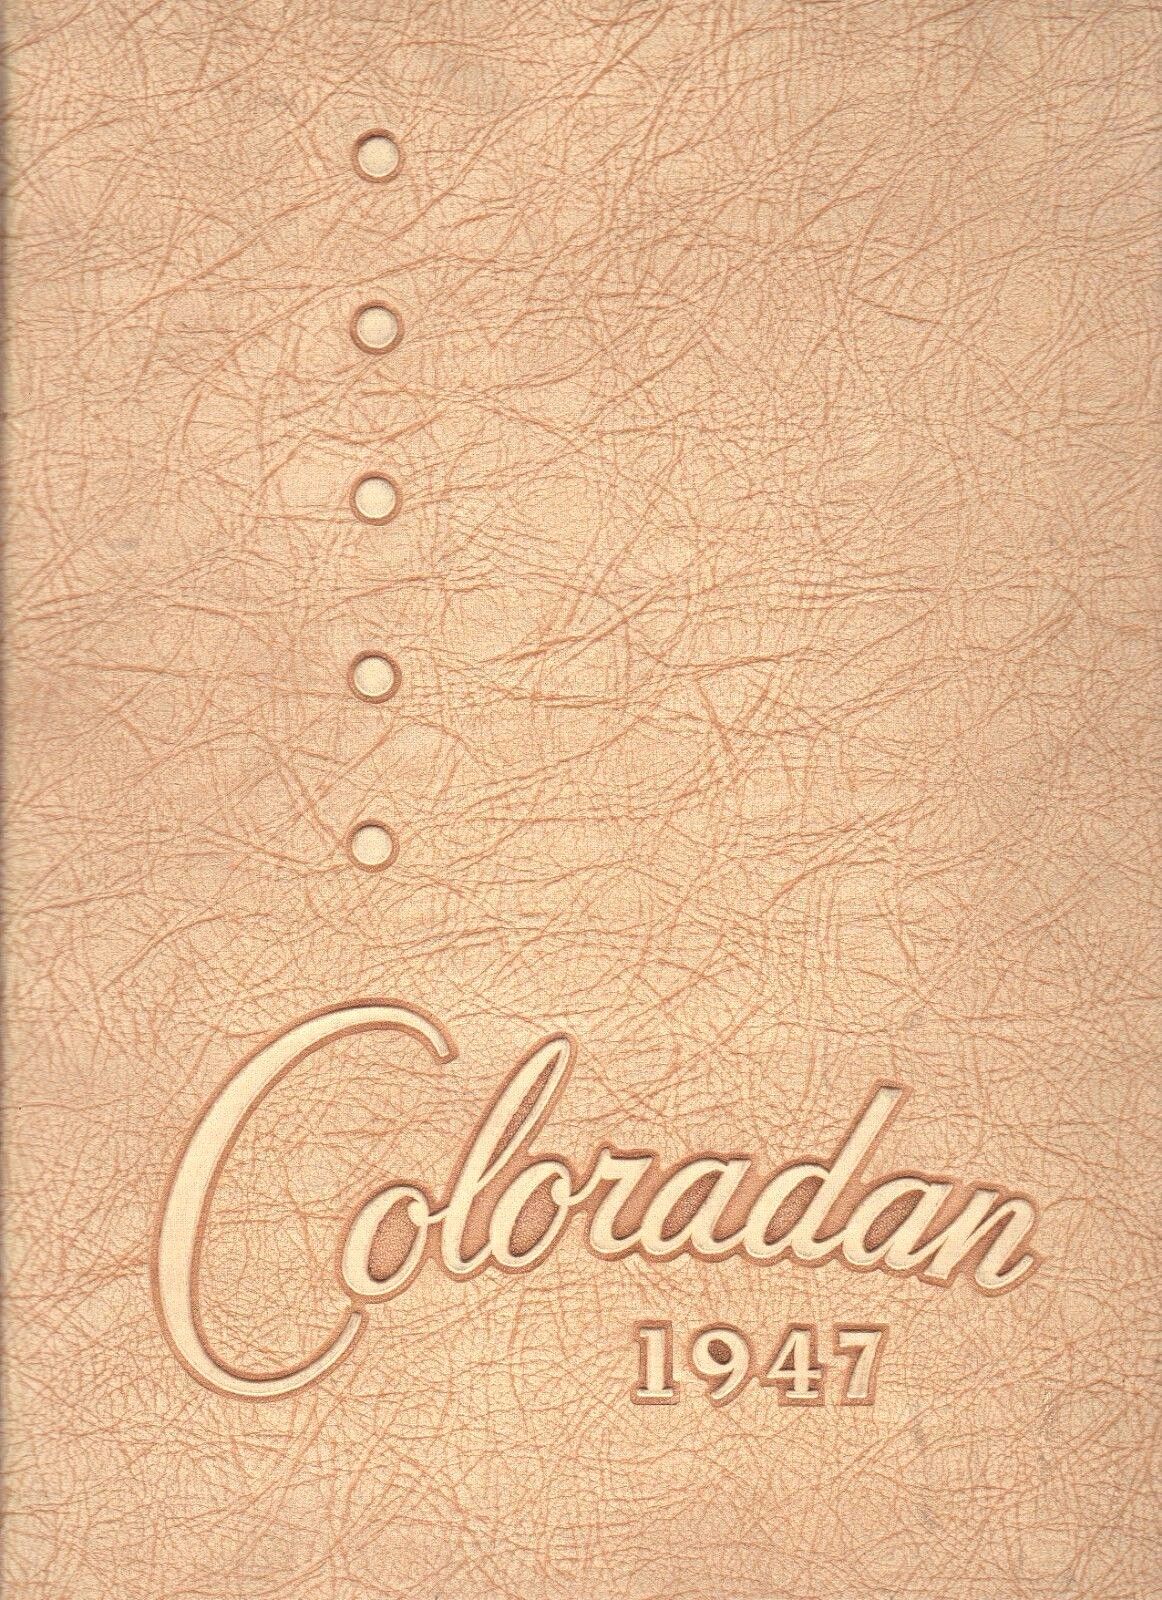 Original 1947 Coloradan-University Of Colorado-Boulder Yearbook-CU Buffalos 